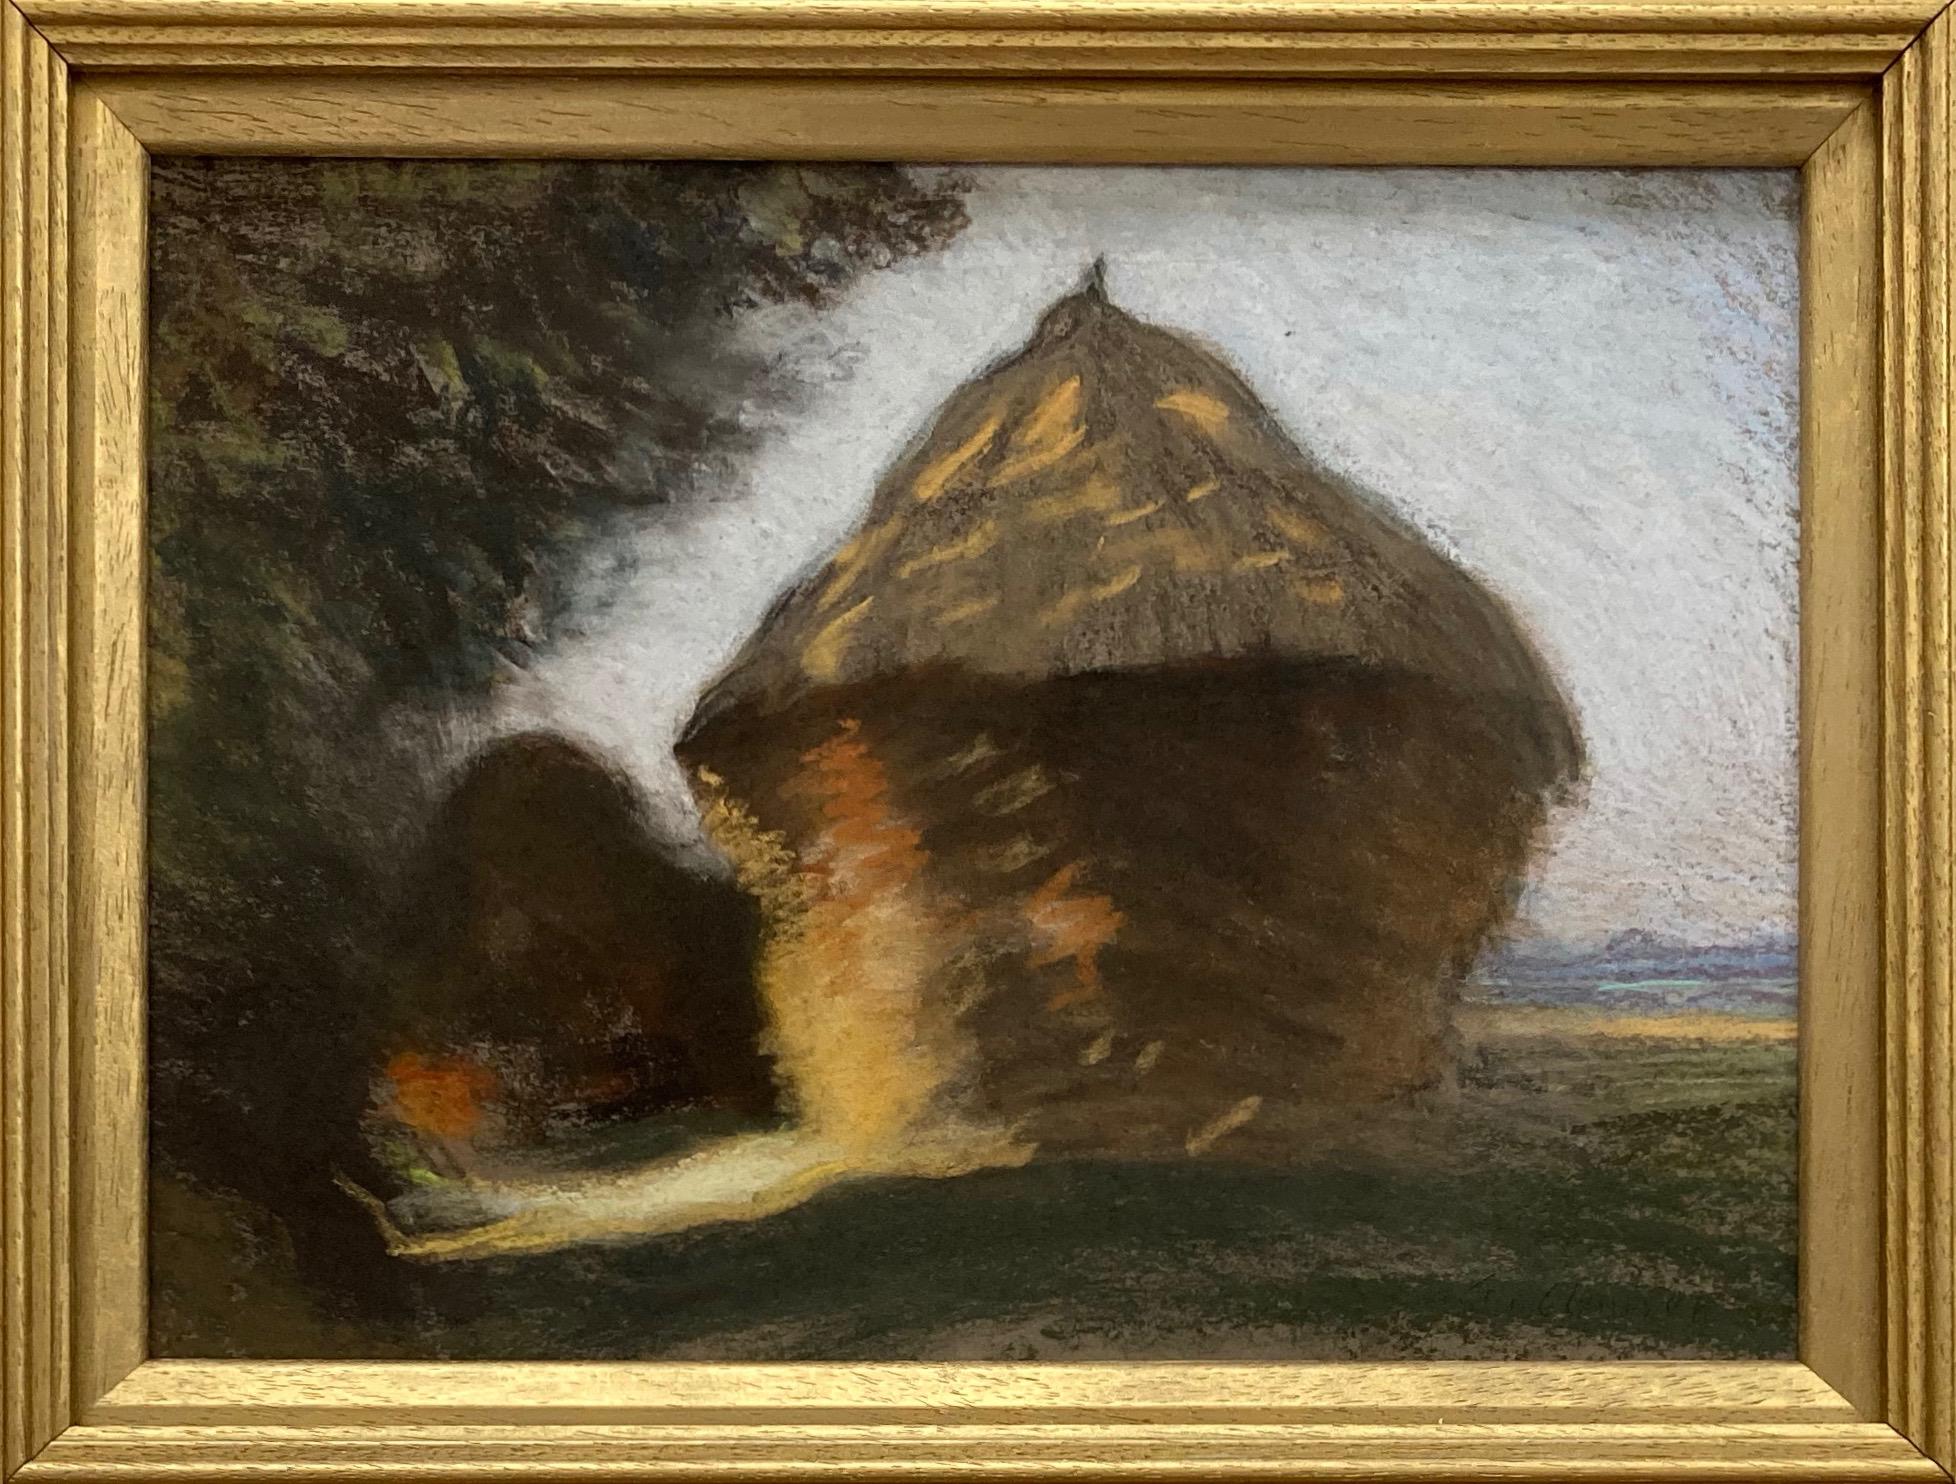 Une image immédiatement captivante de l'un des grands maîtres de l'impressionnisme britannique. La meule de foin est l'une des principales icônes de la peinture en plein air du XIXe siècle : un sujet très apprécié par Monet et les